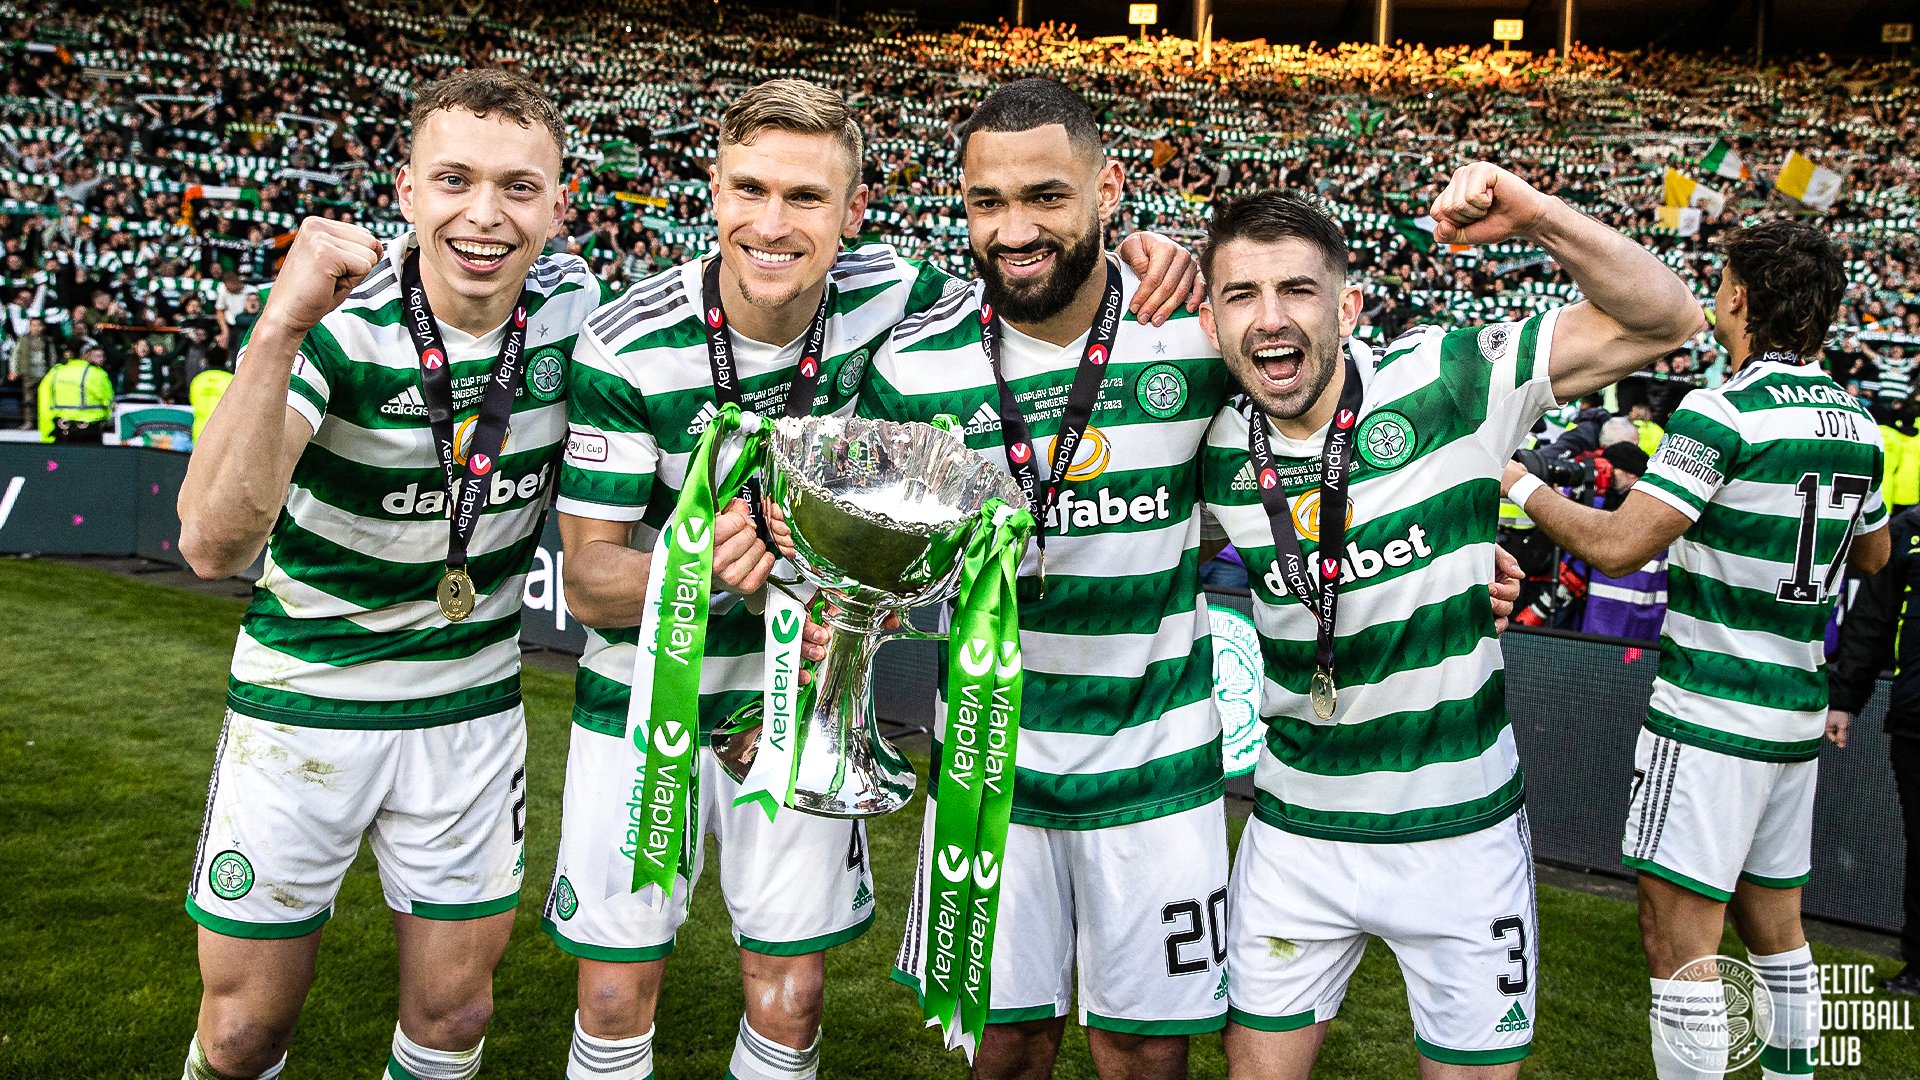 Celtic - Câu lạc bộ bóng đá chuyên nghiệp và nổi tiếng ở Scotland